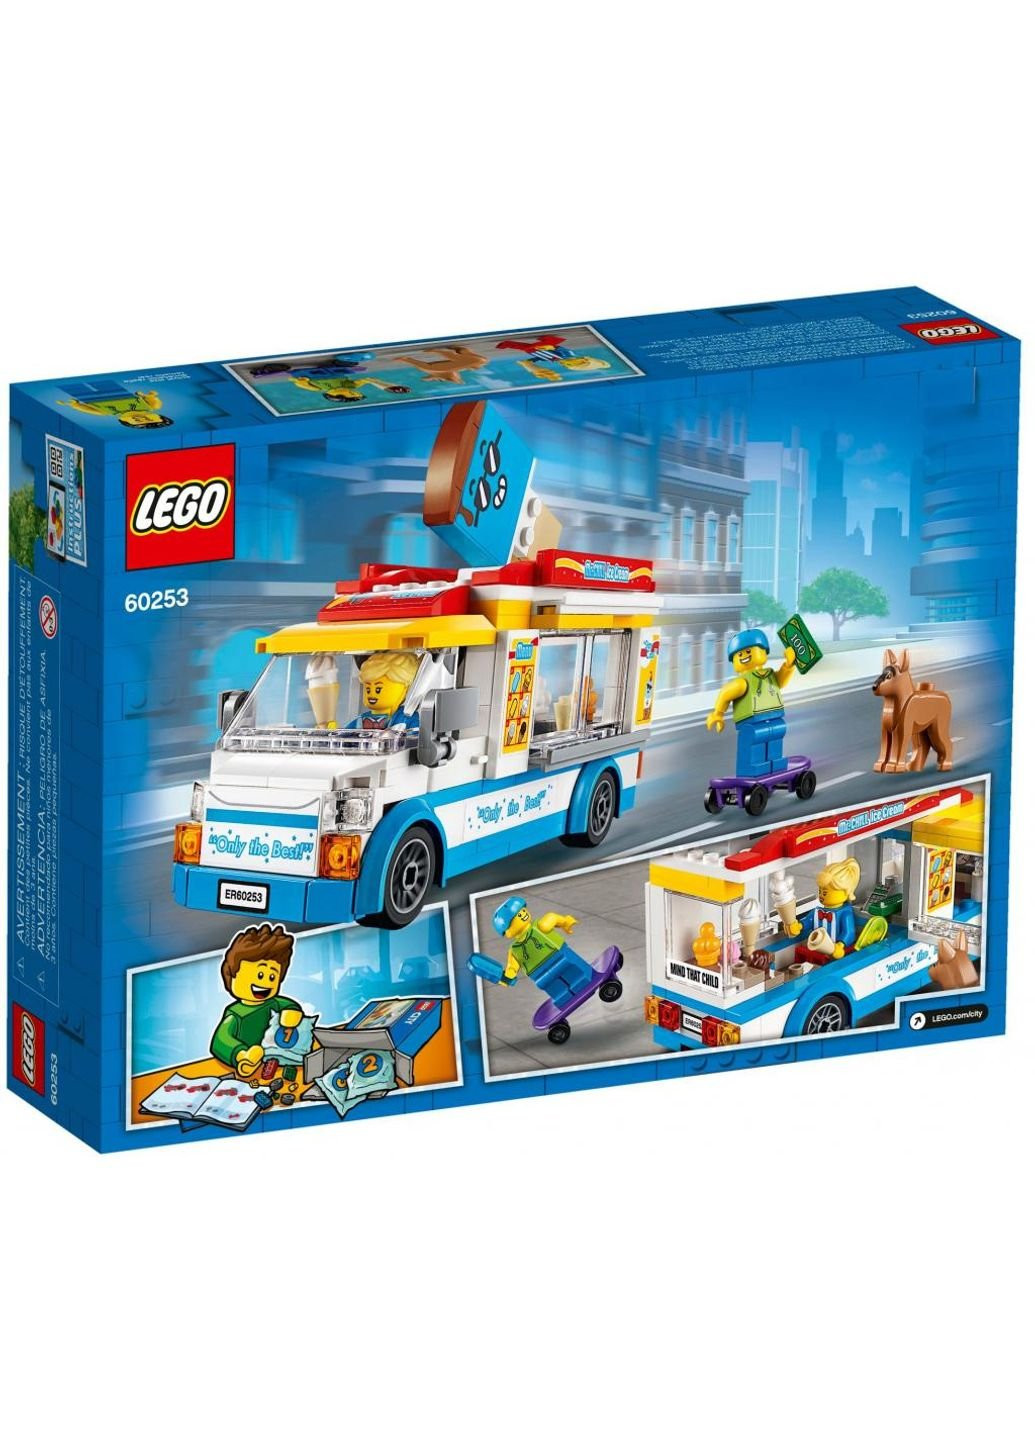 Конструктор ей (60253) Lego city great vehicles грузовик мороженщика 200 детал (249598971)